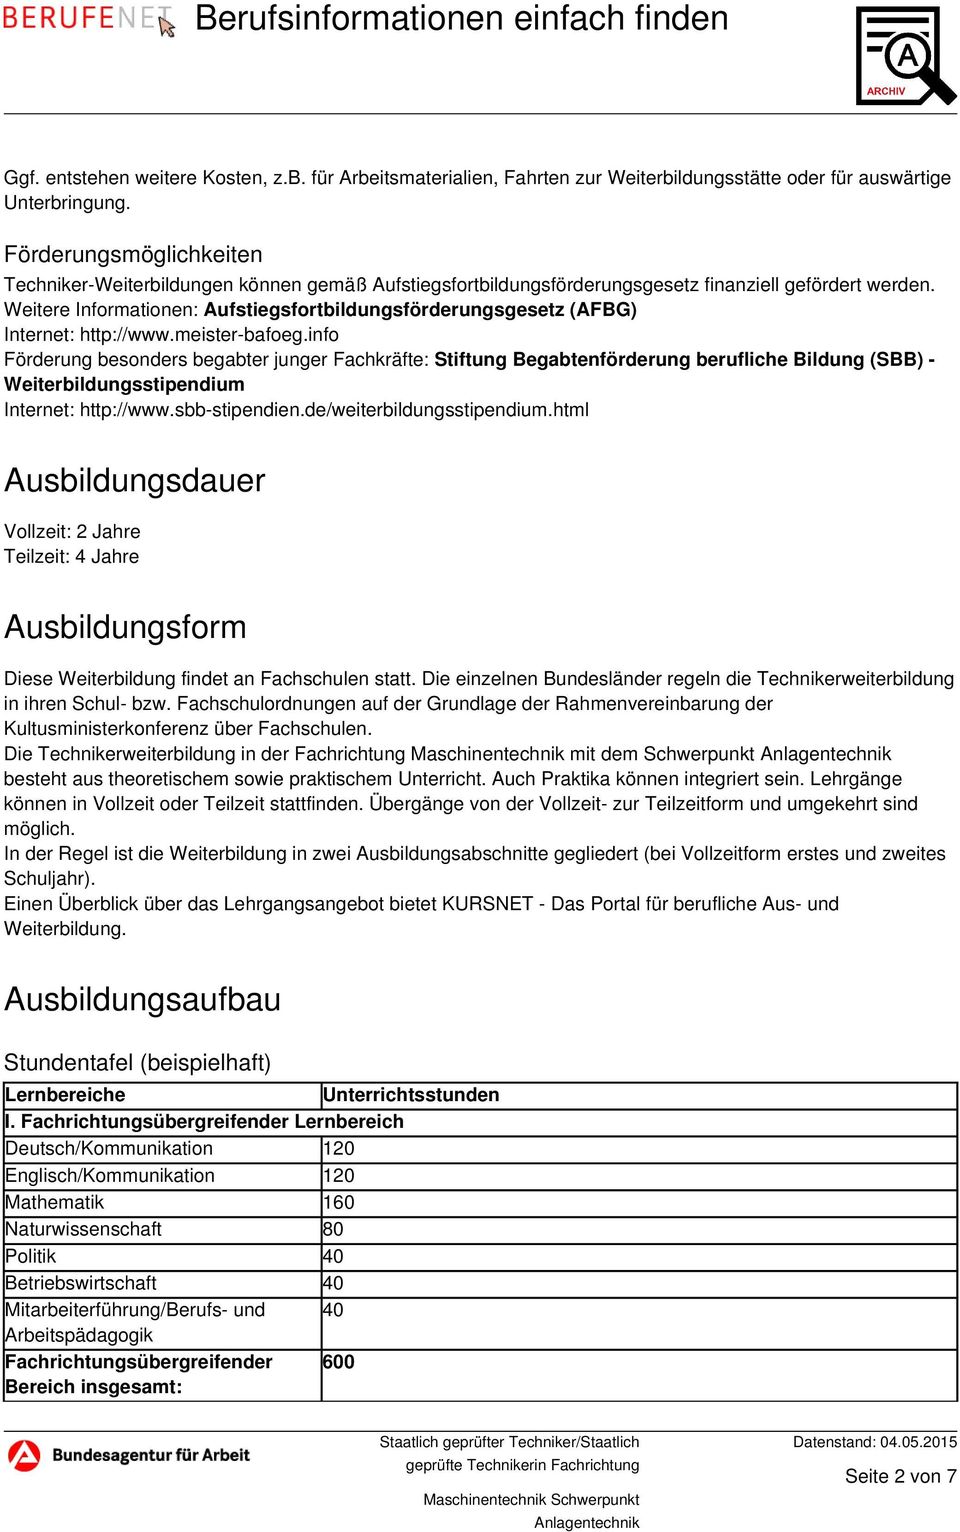 Weitere Informationen: Aufstiegsfortbildungsförderungsgesetz (AFBG) Internet: http://www.meister-bafoeg.